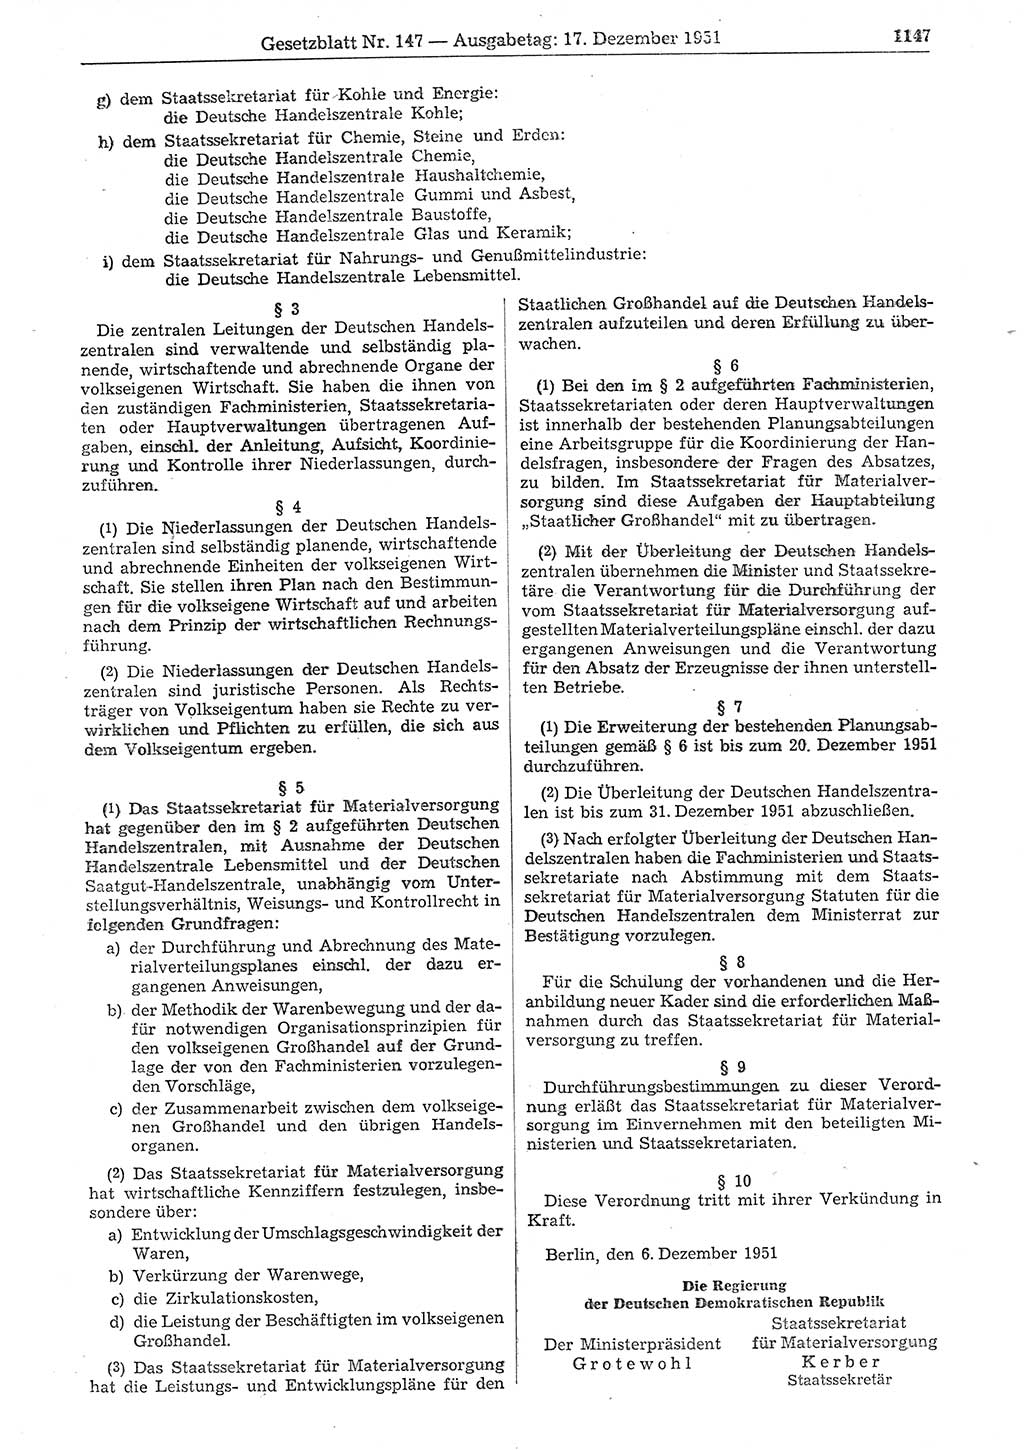 Gesetzblatt (GBl.) der Deutschen Demokratischen Republik (DDR) 1951, Seite 1147 (GBl. DDR 1951, S. 1147)